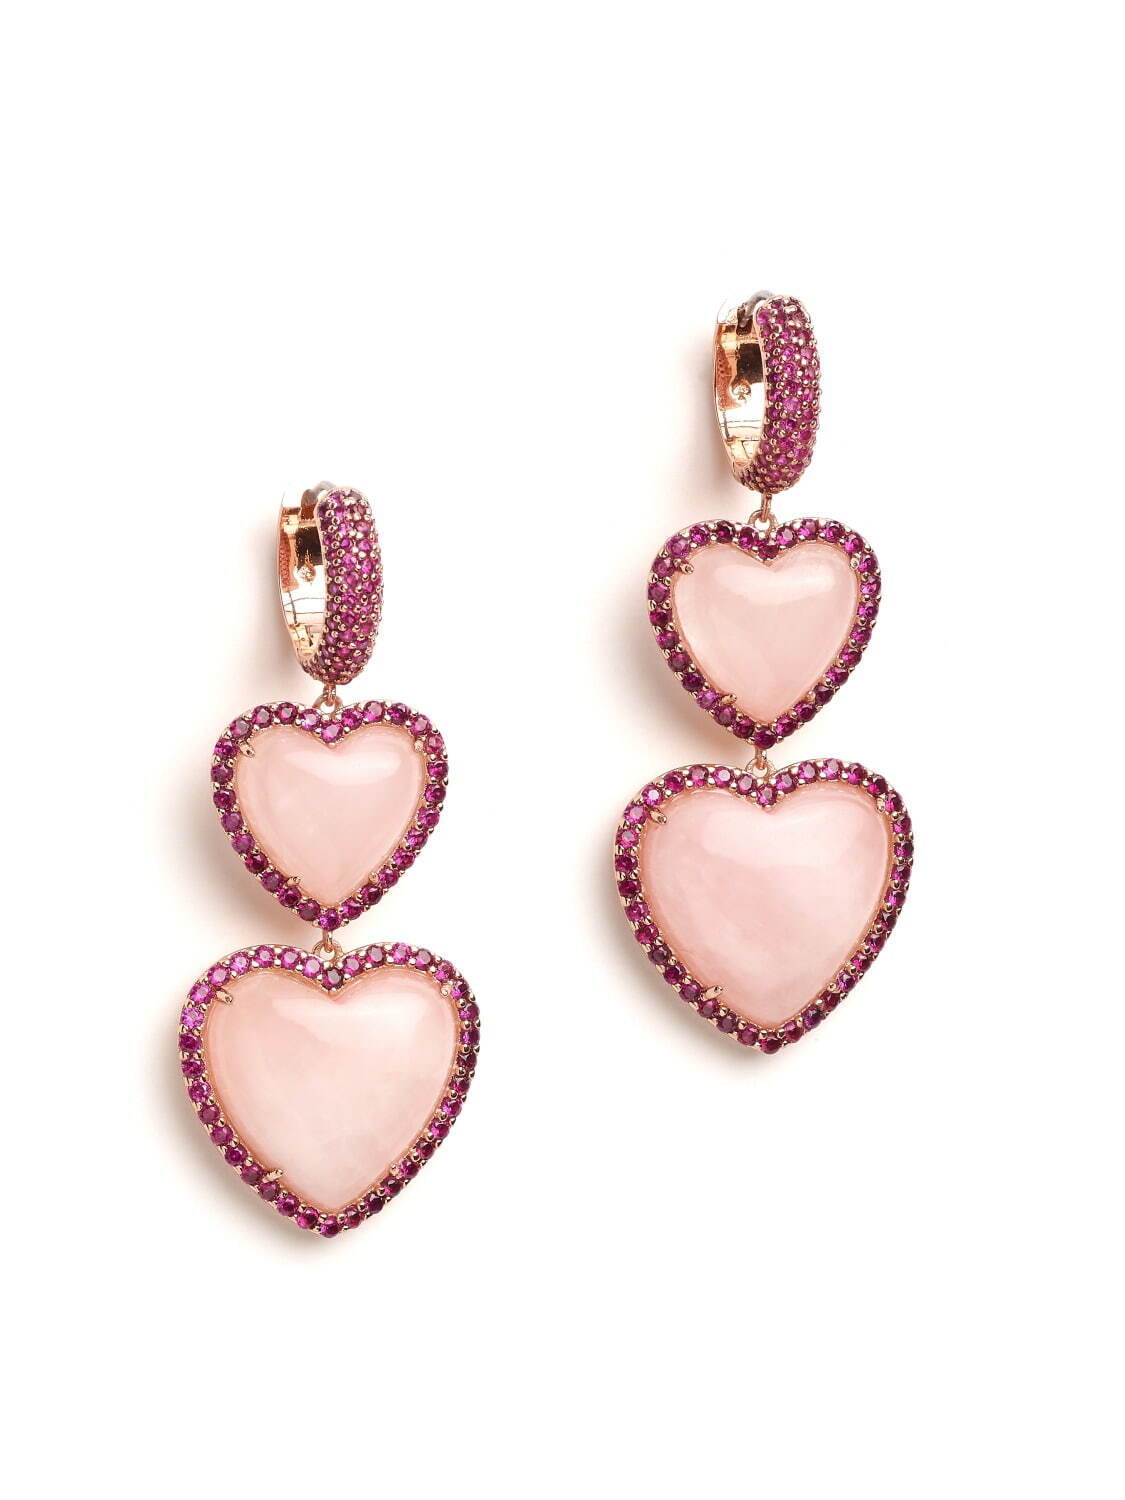 heart of hearts double drop earrings 24,200円
※1月上旬発売予定